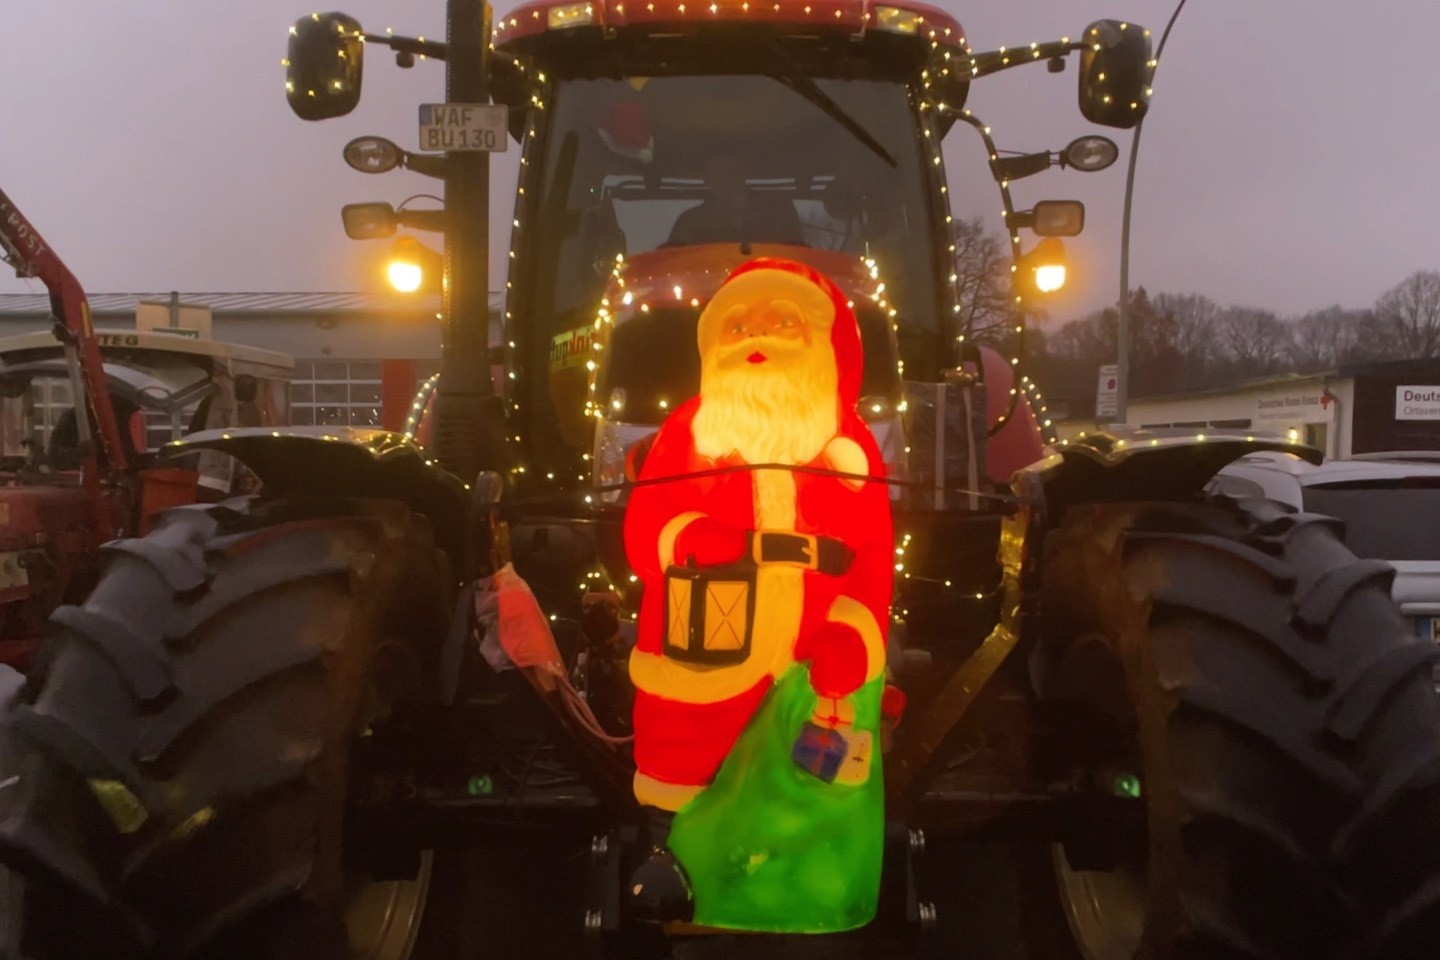 Traktor Weihnacht,Ein Funken Hoffnung,Sassenberg,Traktor Corso,Weihnachten,